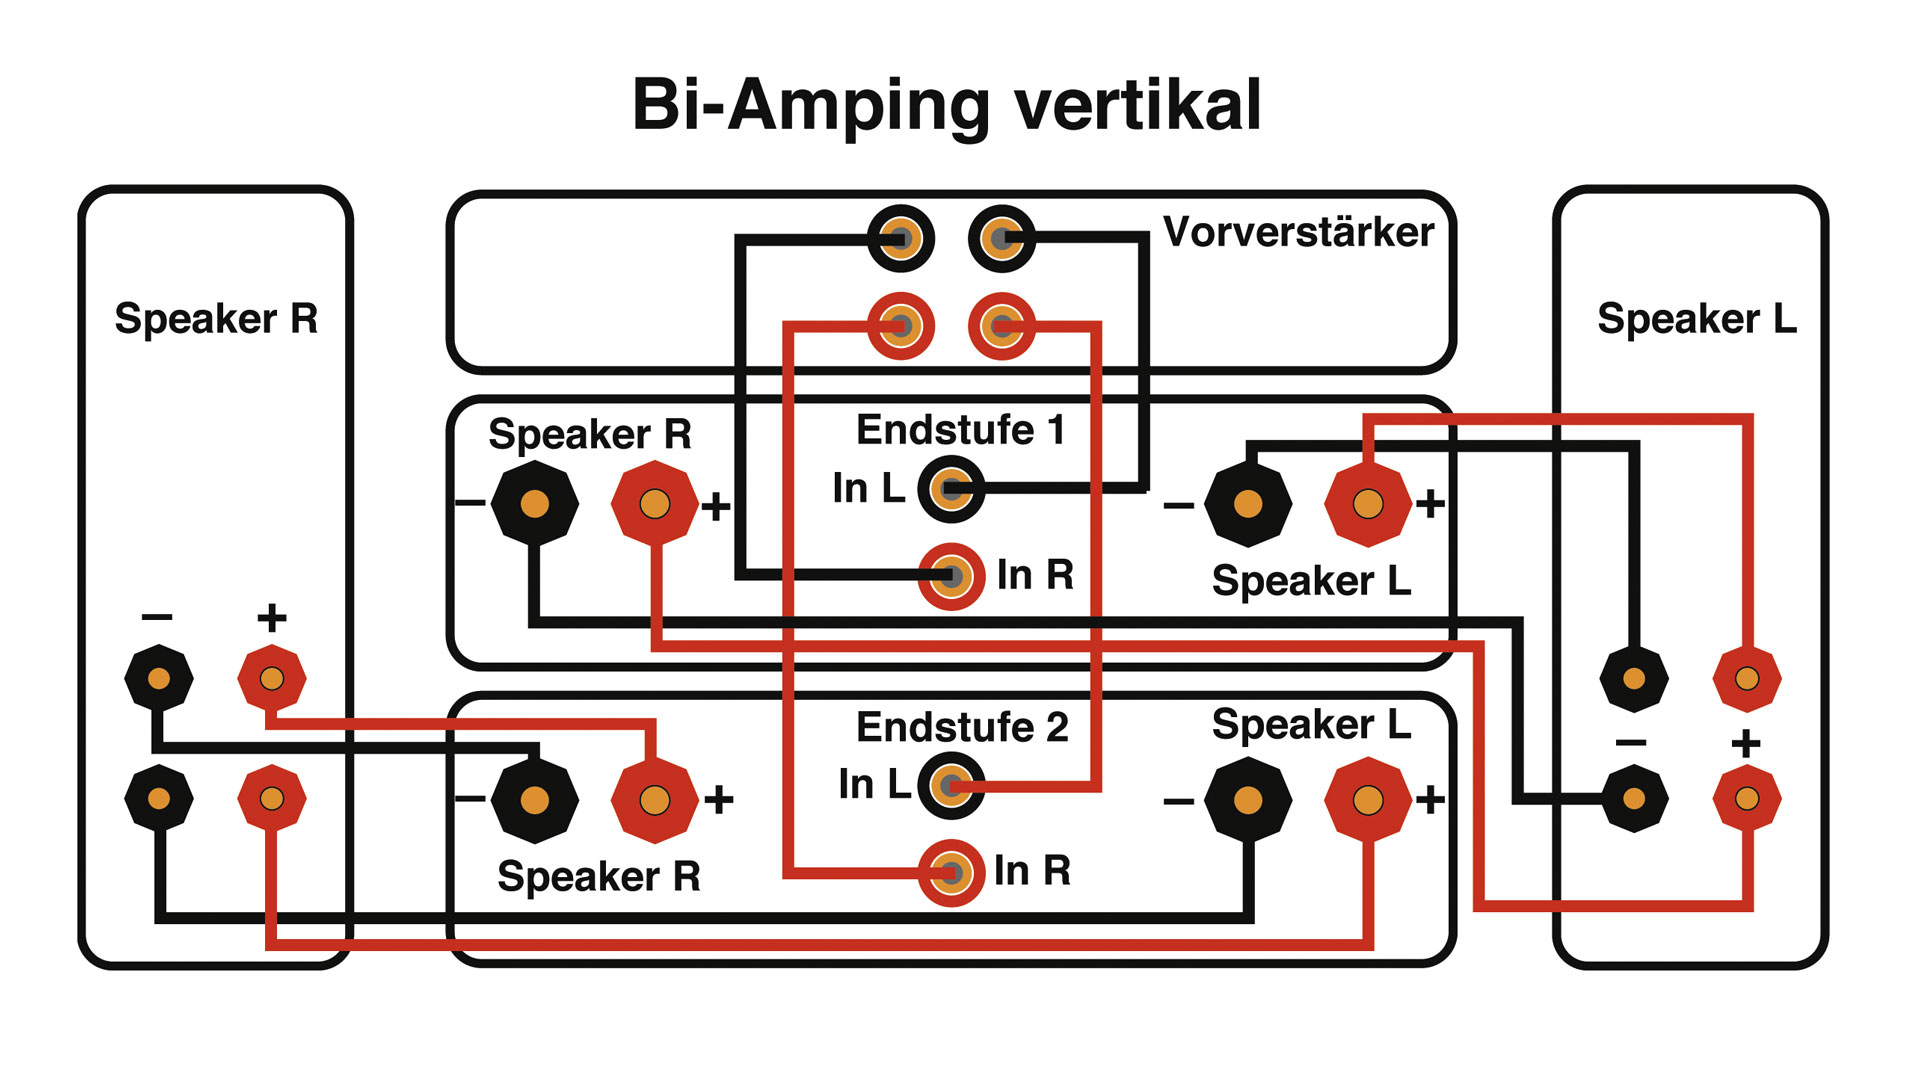 https://stereo-magazine.com/fileadmin/user_upload/backend_upload/ST_21-03/Bi-wiring/Bi_Amp-vert.jpg